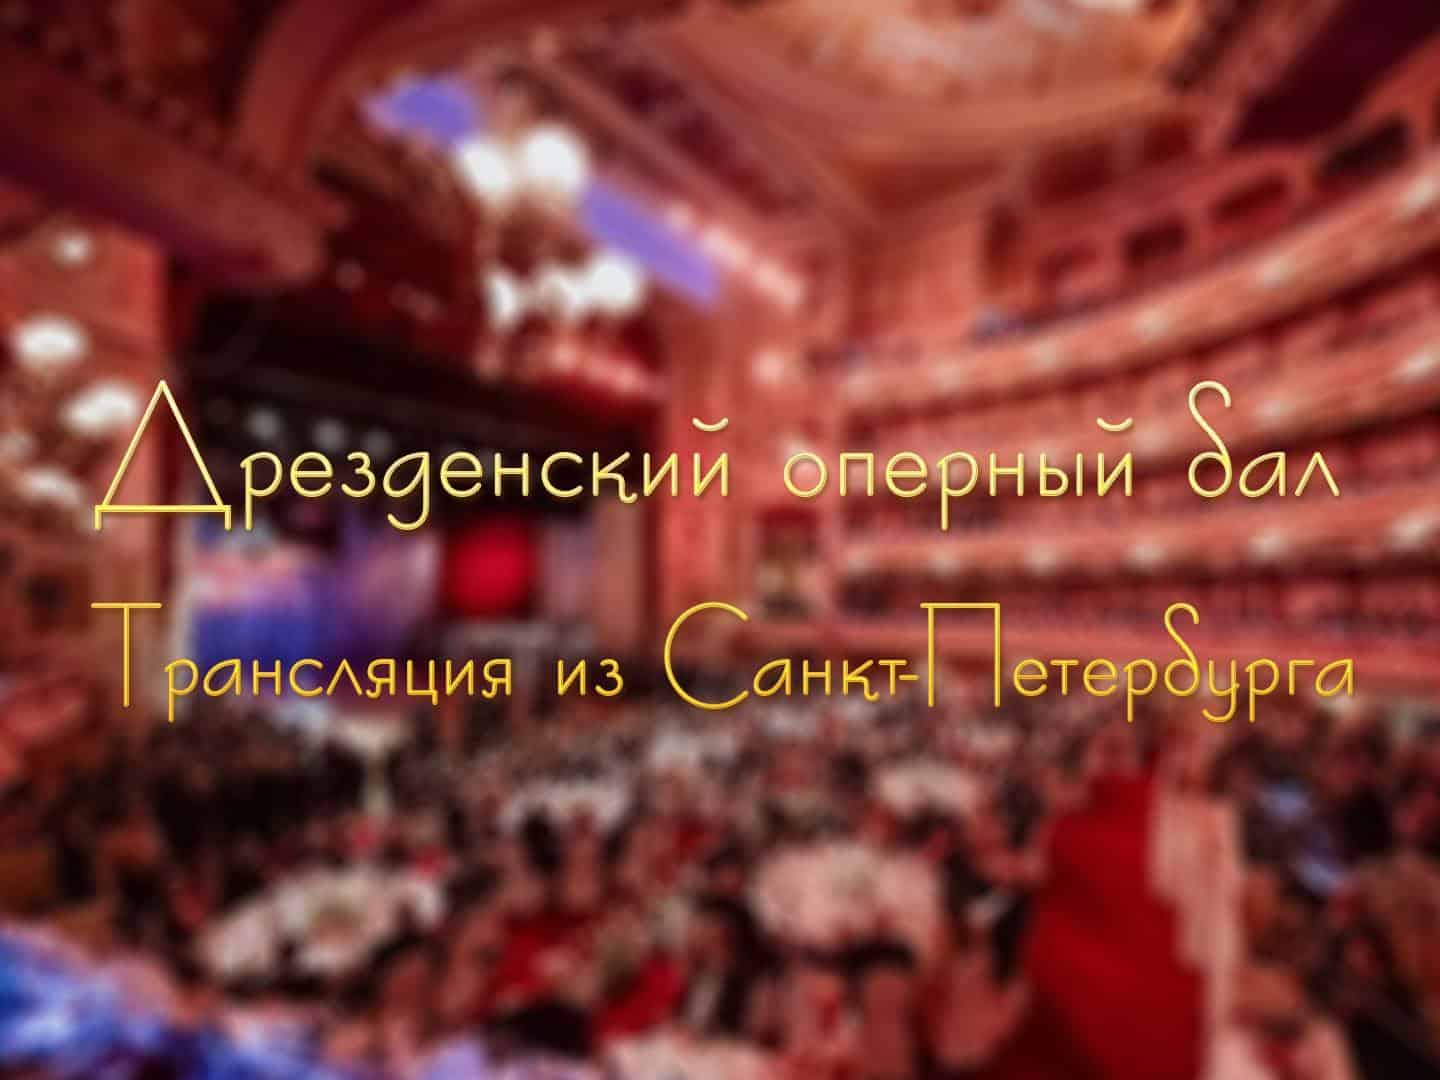 Дрезденский оперный бал. Трансляция из Санкт-Петербурга